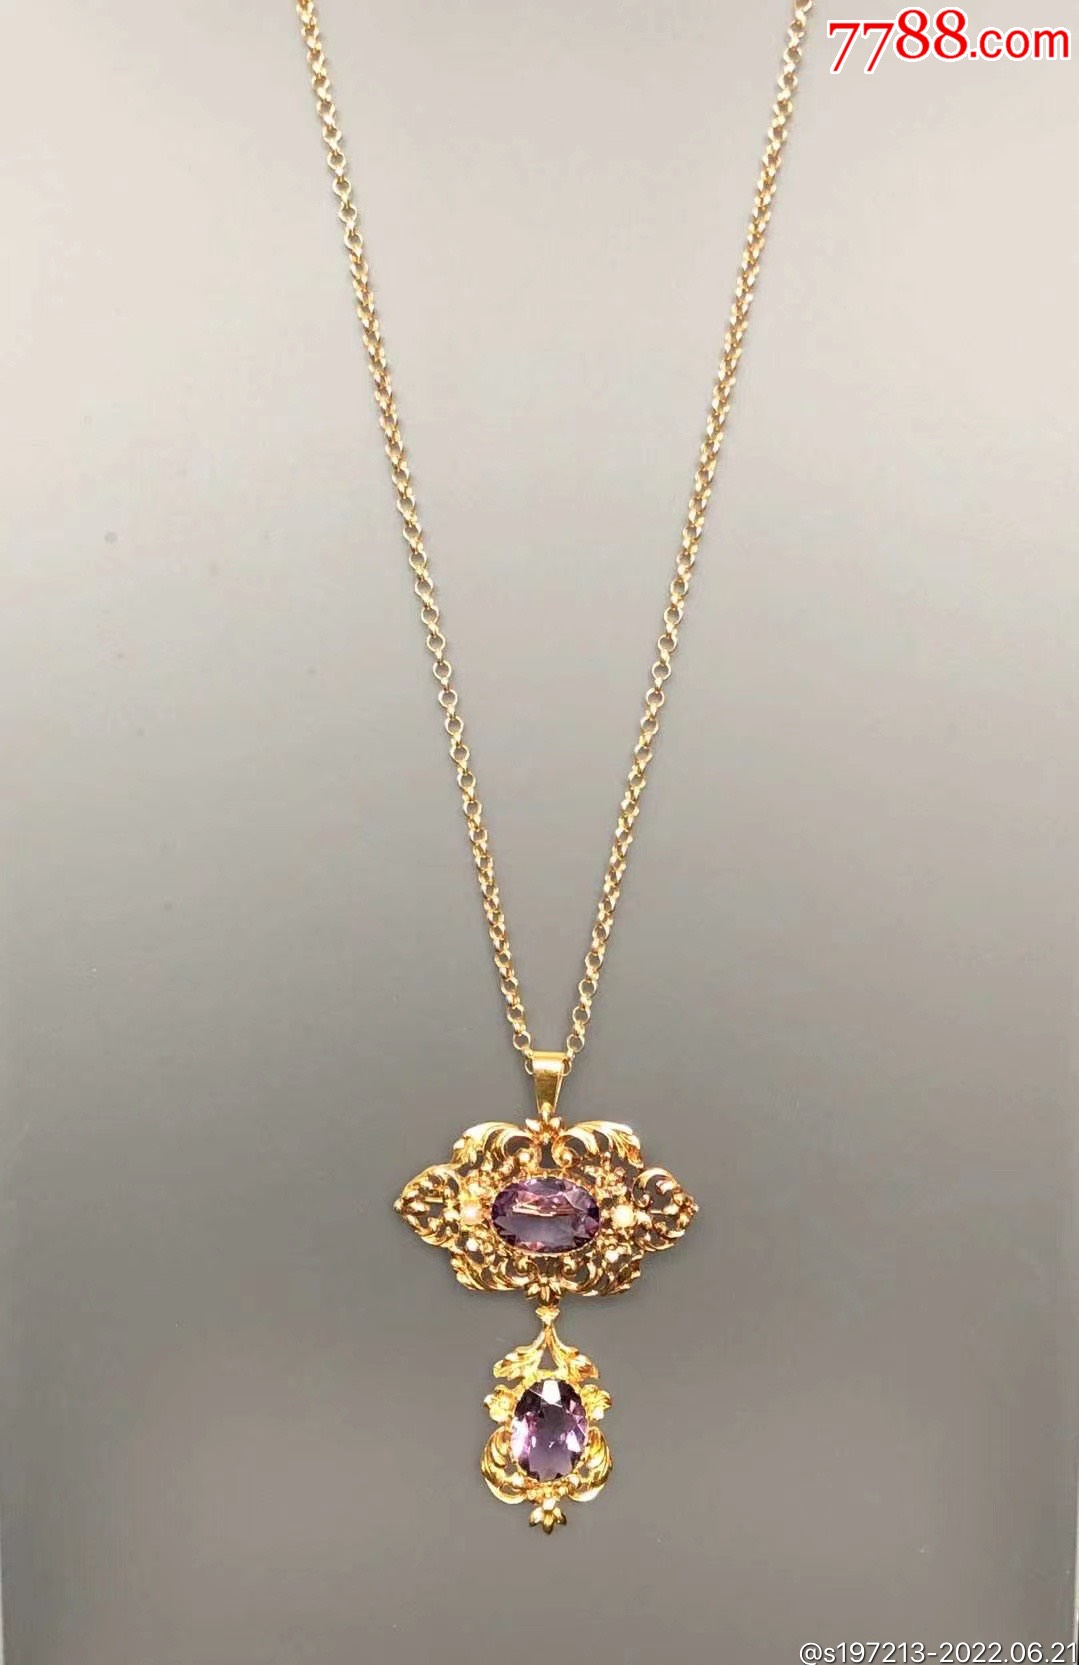 维多利亚时代 紫水晶古董珠宝 - 高清图片，堆糖，美图壁纸兴趣社区